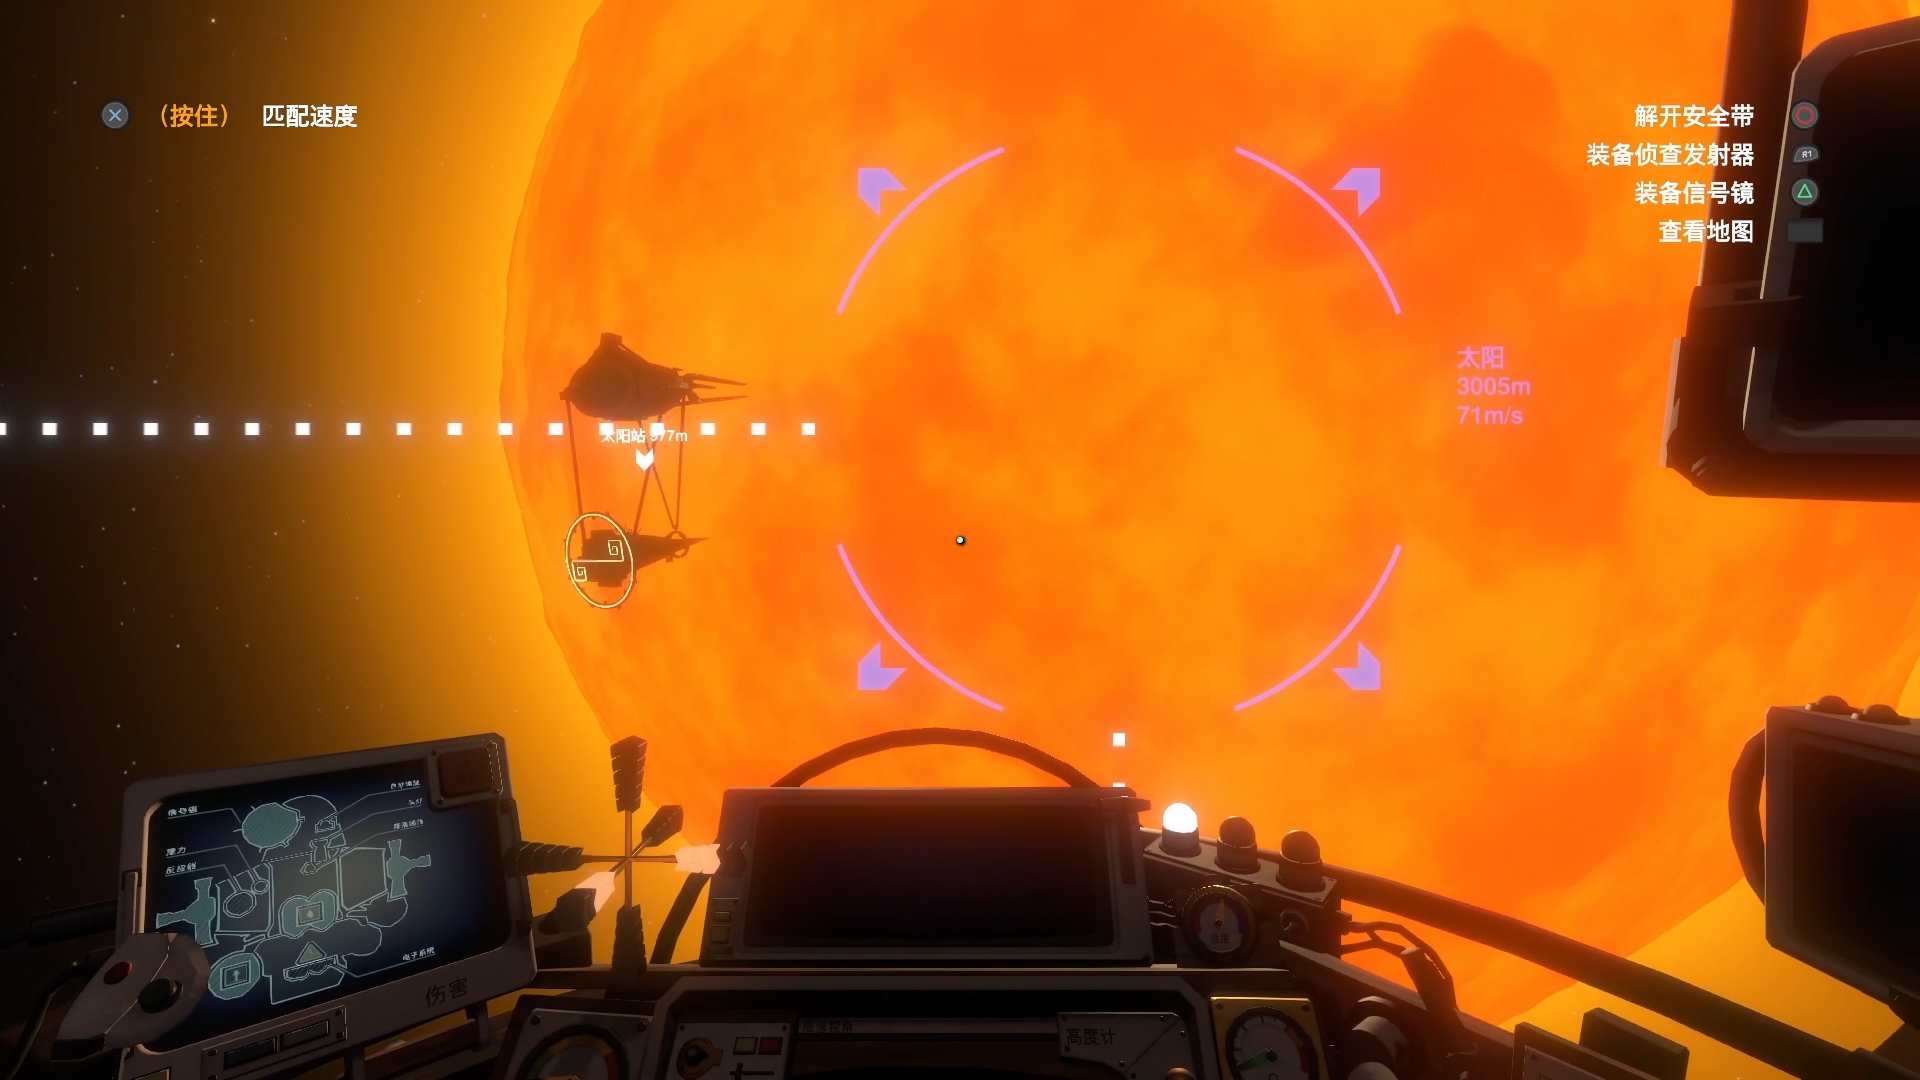 親自開上太陽站幾乎是整個遊戲最難的成就